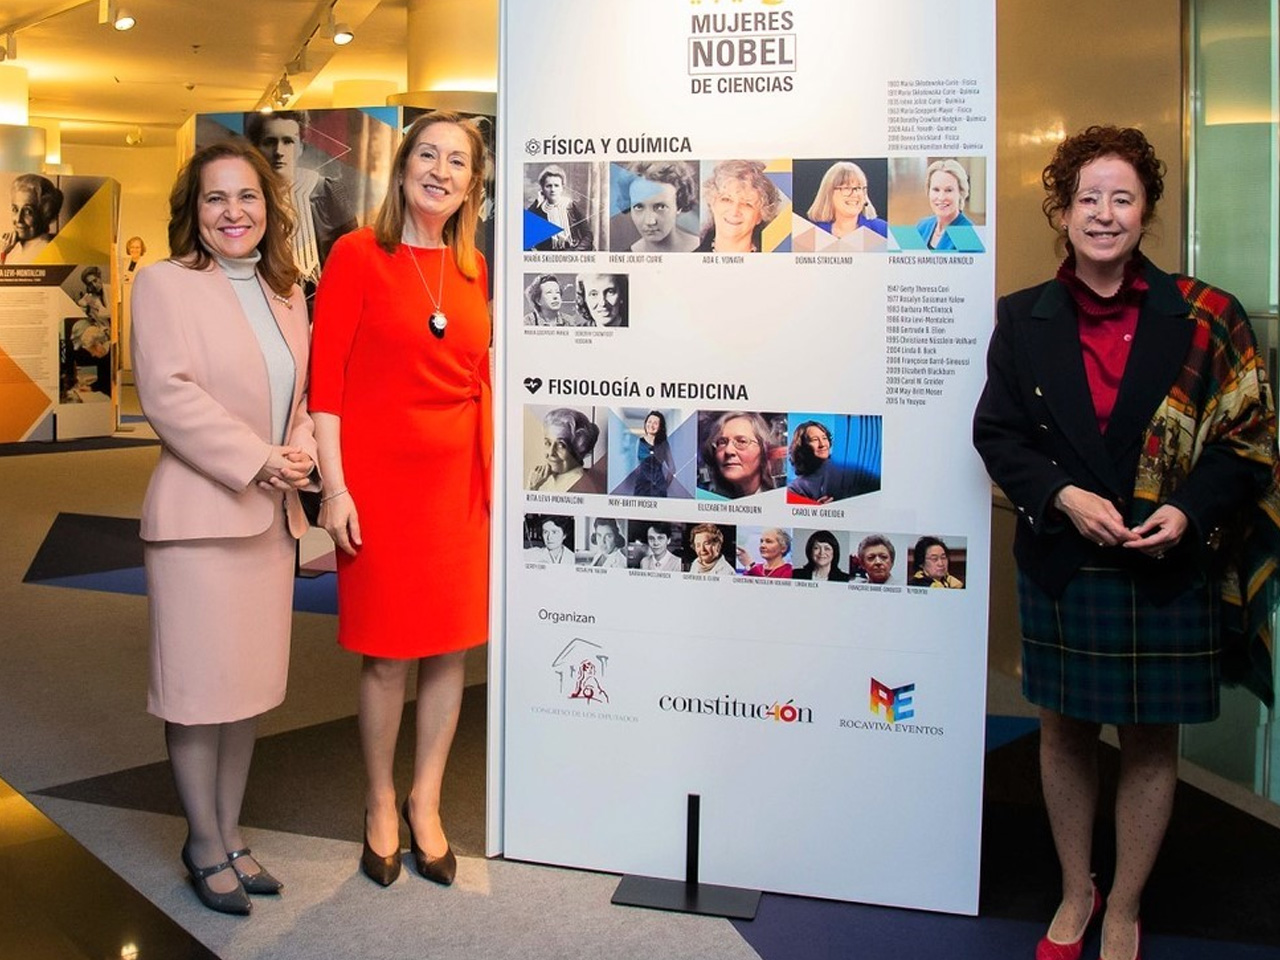 Expo Mujeres Nobel en el congreso de los diputados